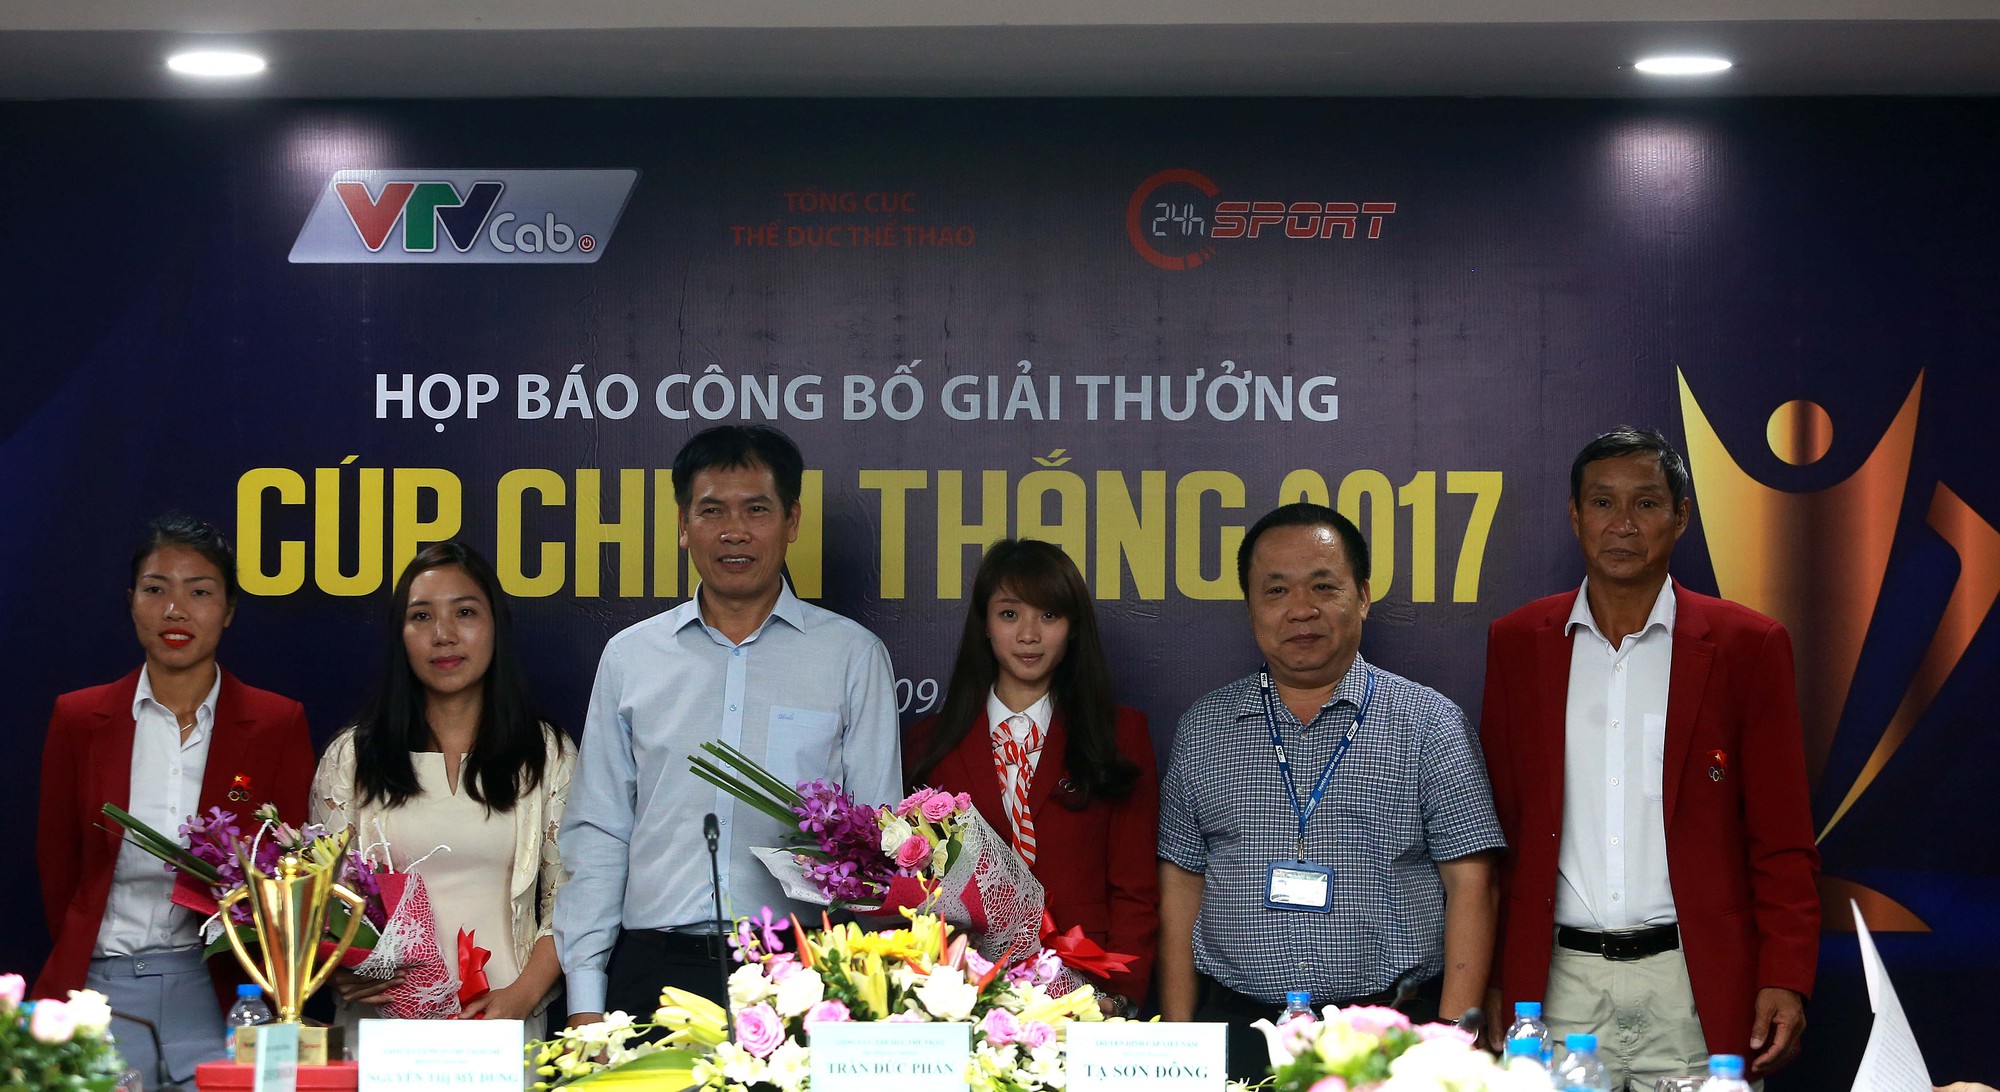 Dương Thúy Vi là 1 trong 3 khách mời cùng nhà vô địch nhảy xa Bùi Thị Thu Thảo và HLV Mai Đức Chung (bóng đá)